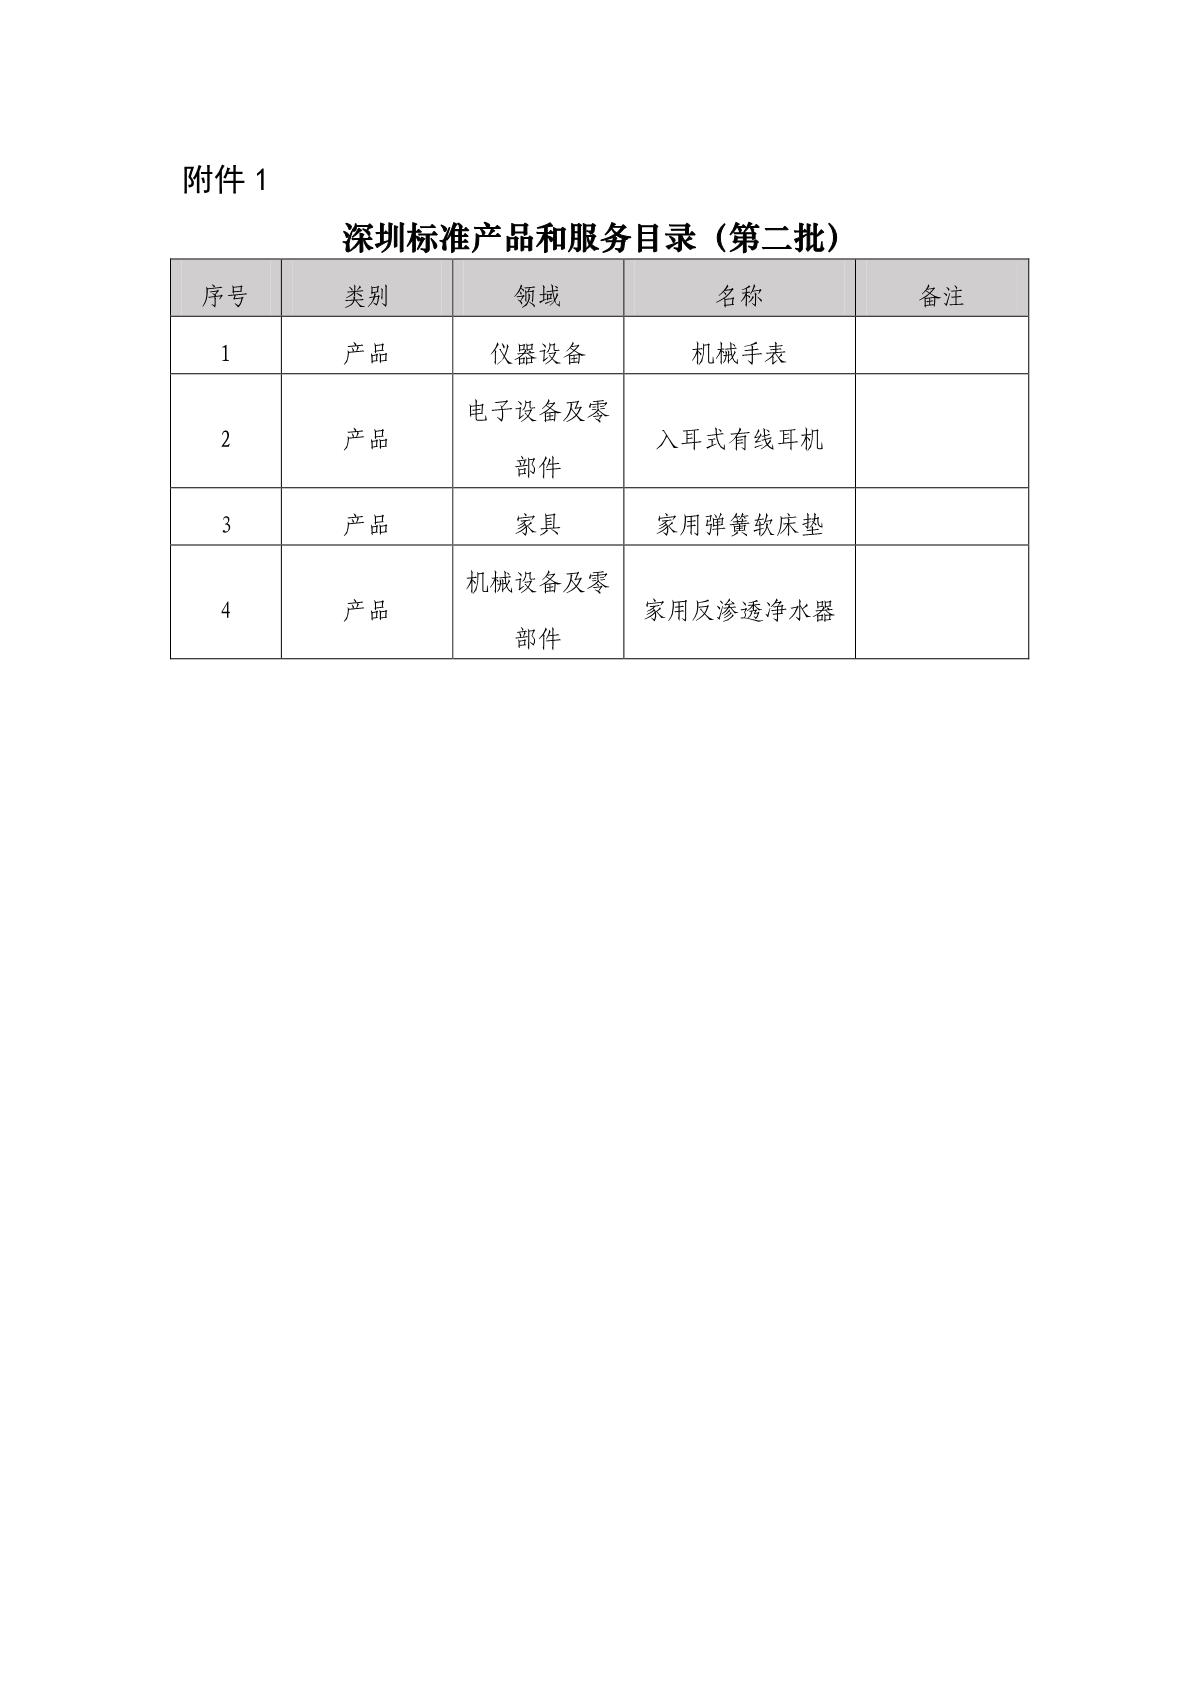 深圳标准产品和服务目录（第二批）